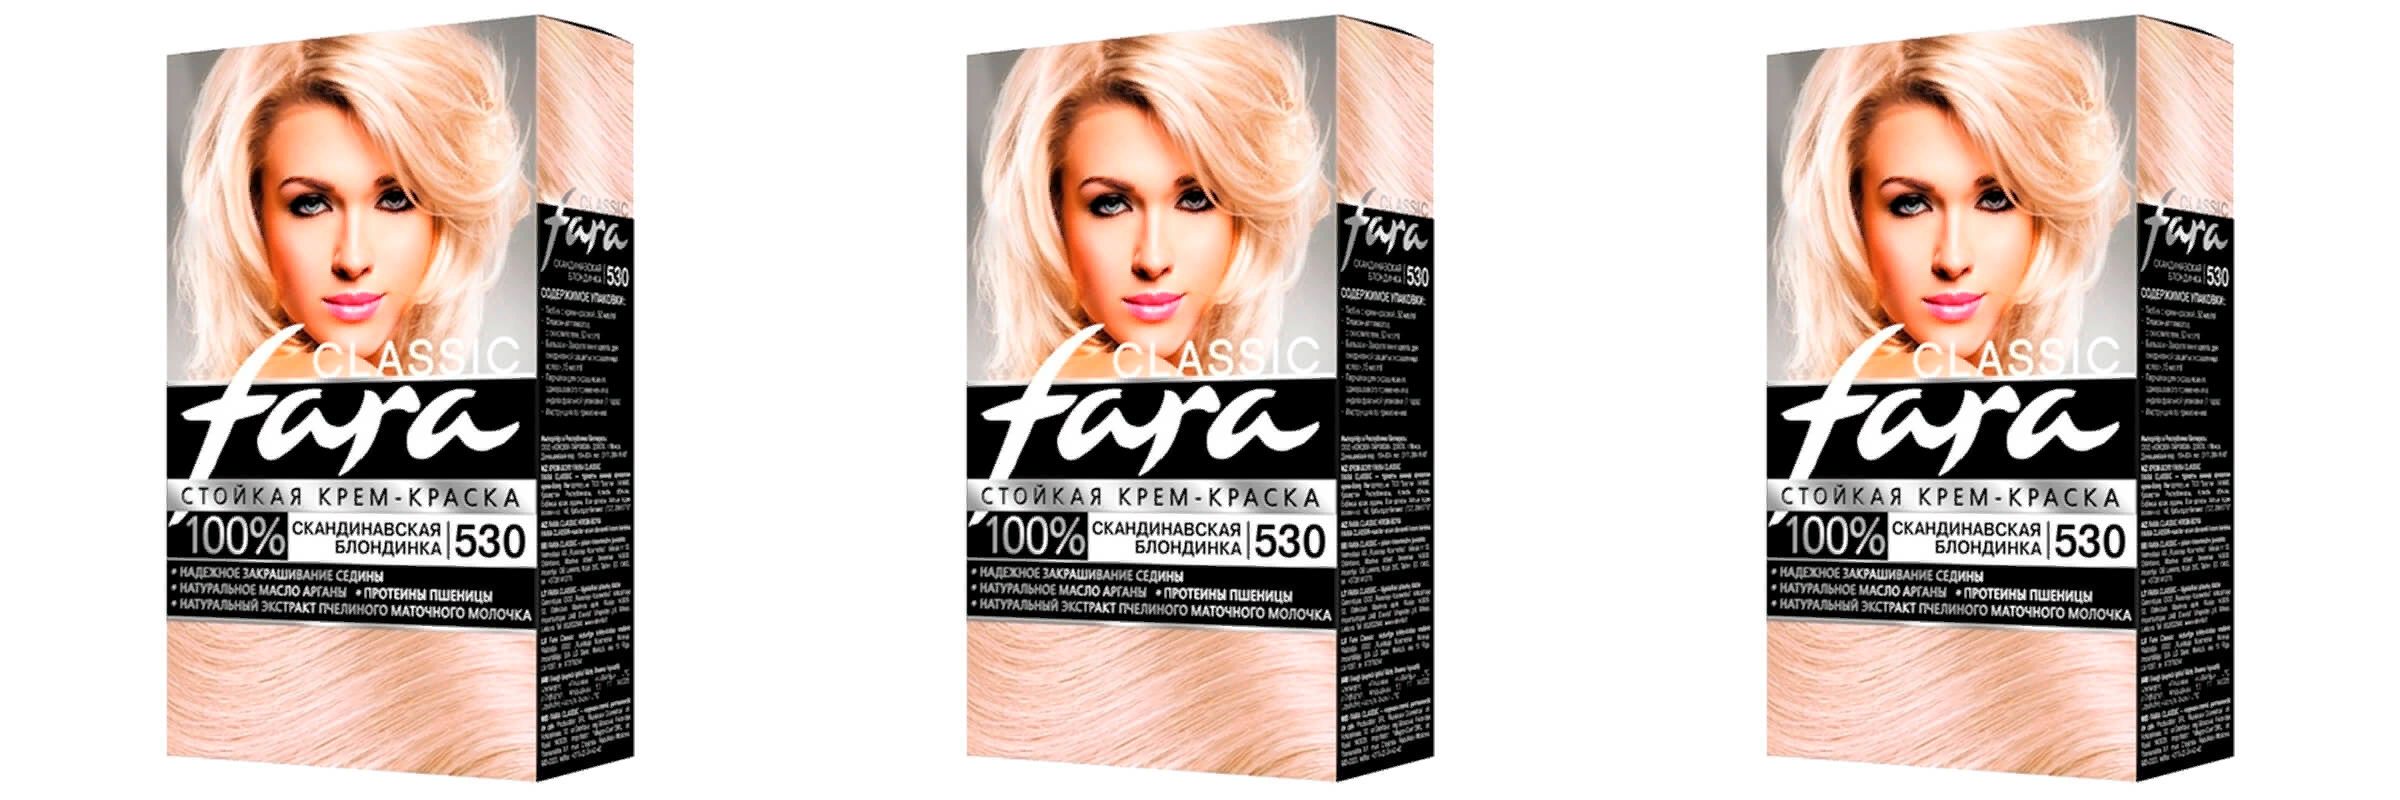 Краска для волос Fara Classic скандинавская блондинка 530, 3шт блондинка